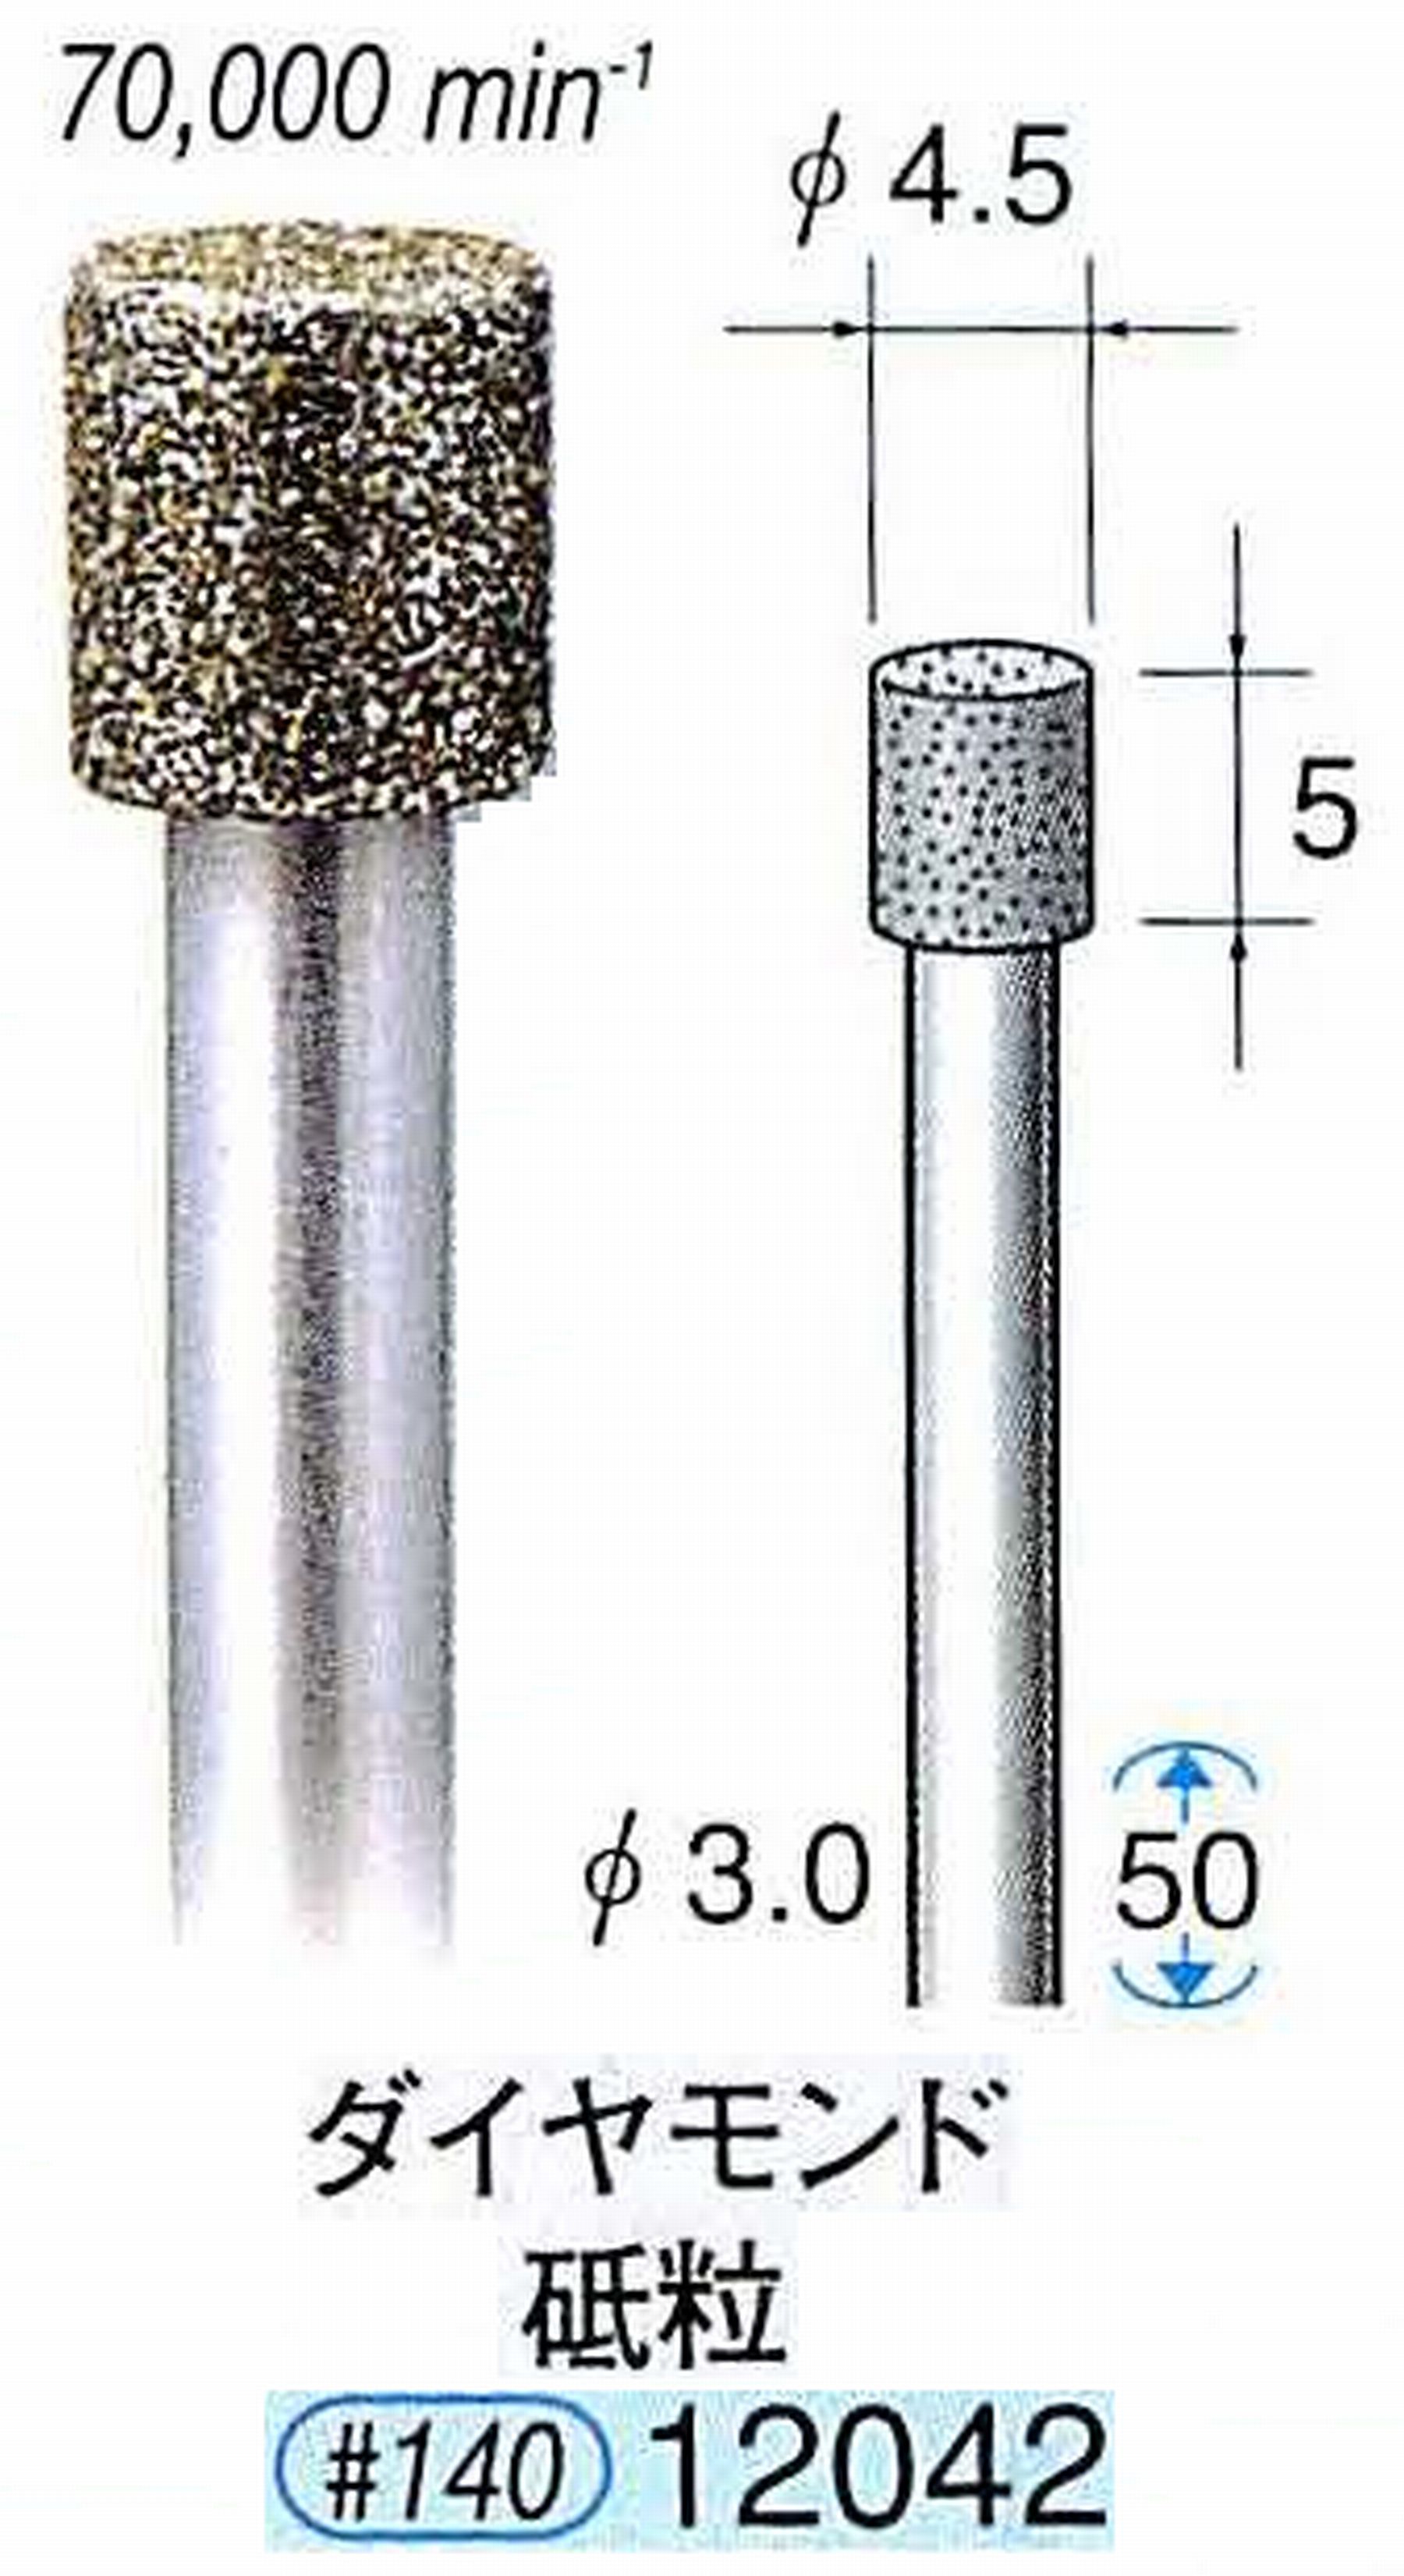 ナカニシ/NAKANISHI 電着ダイヤモンド ダイヤモンド砥粒 軸径(シャンク)φ3.0mm 12042